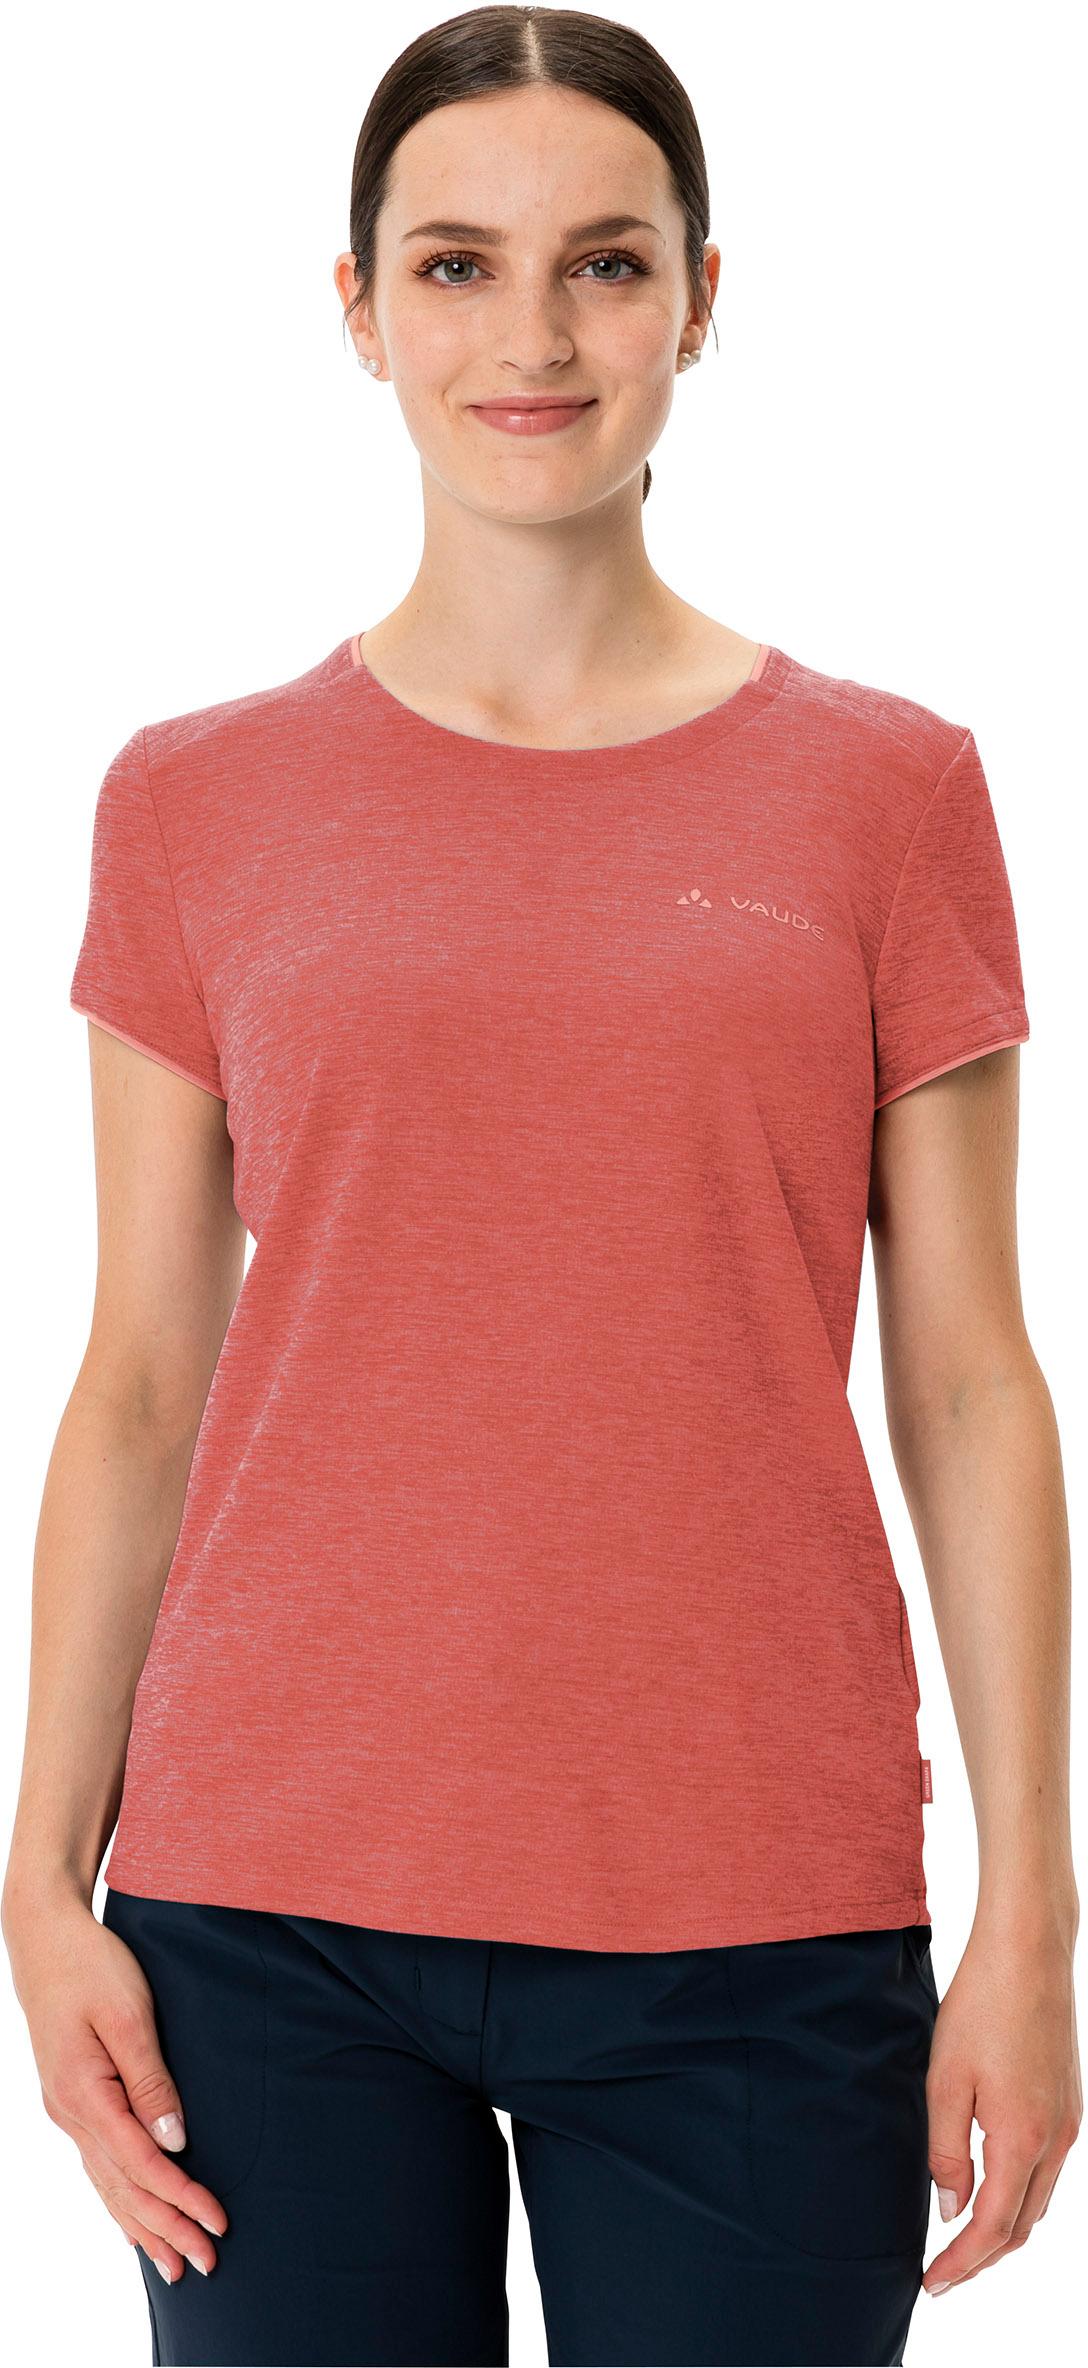 kaufen Shop Funktionsshirt im von Essential VAUDE Damen Online hotchili SportScheck